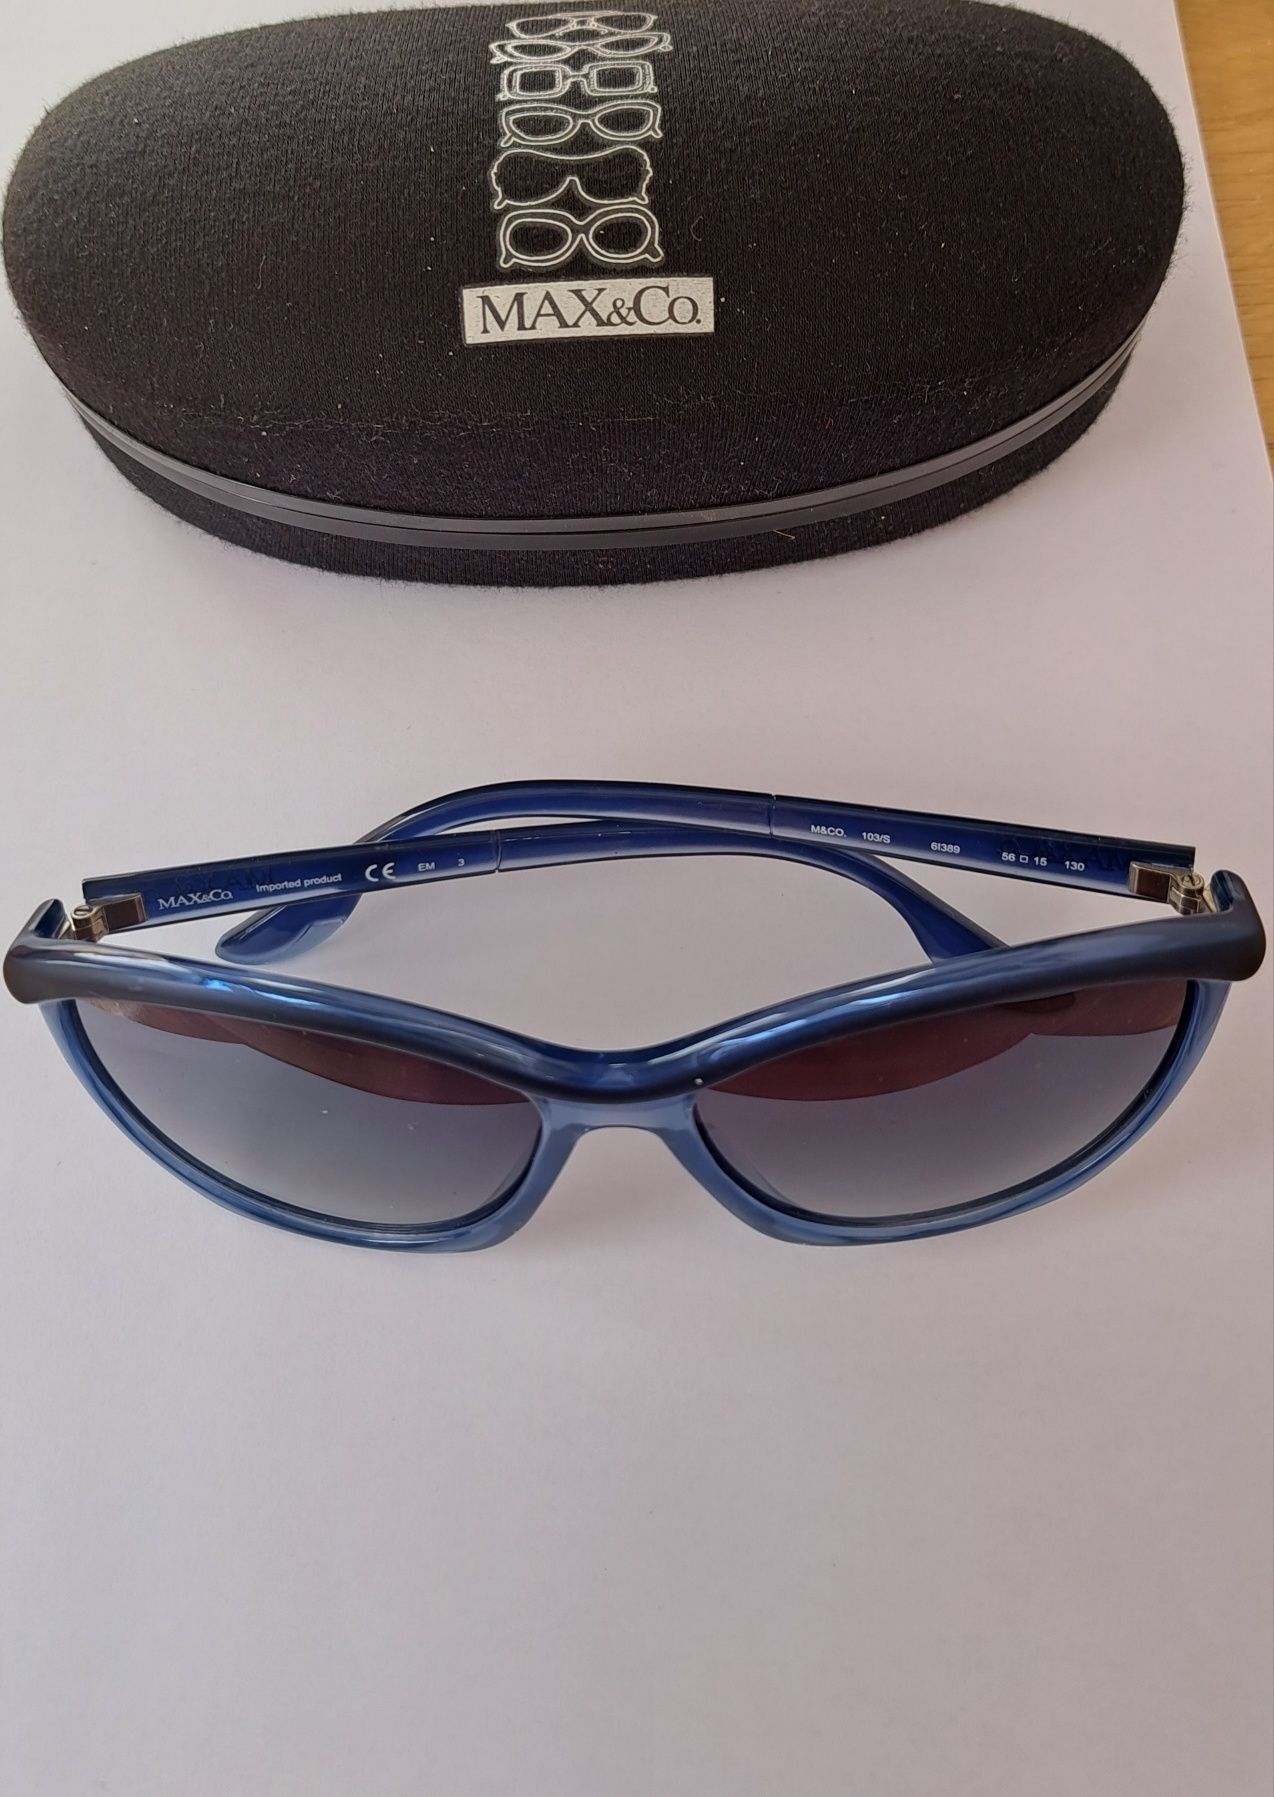 Max&co., ochelari soare, rama albastră, o purtare